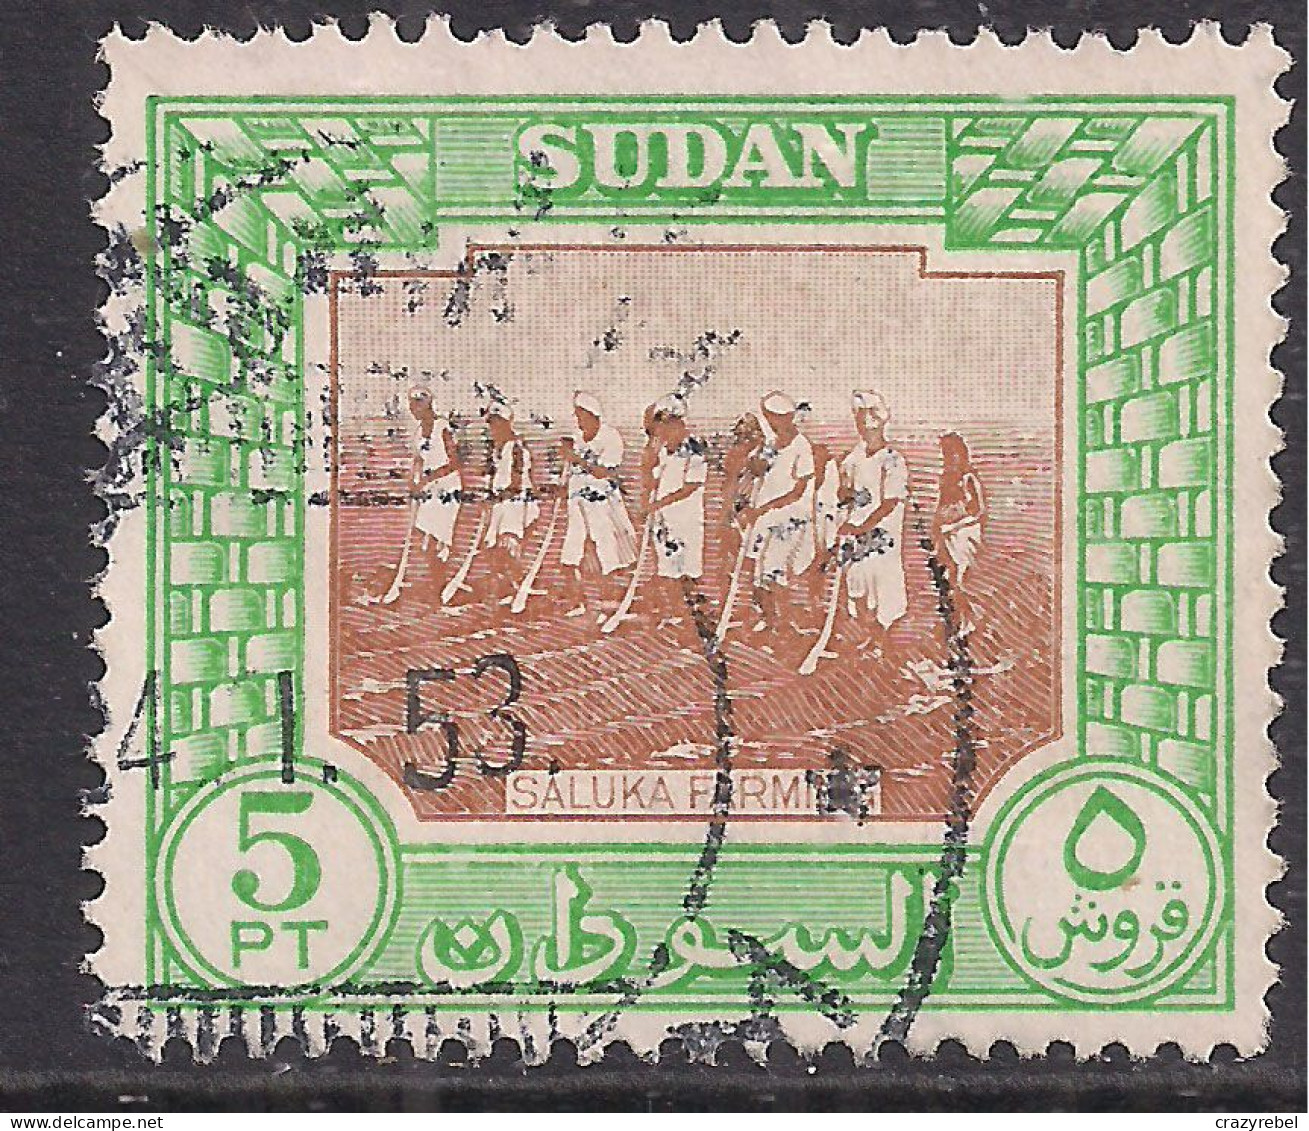 Sudan 1951 KGV1 5pt Saluka Farming Used SG 134 ( D409 ) - Soedan (...-1951)